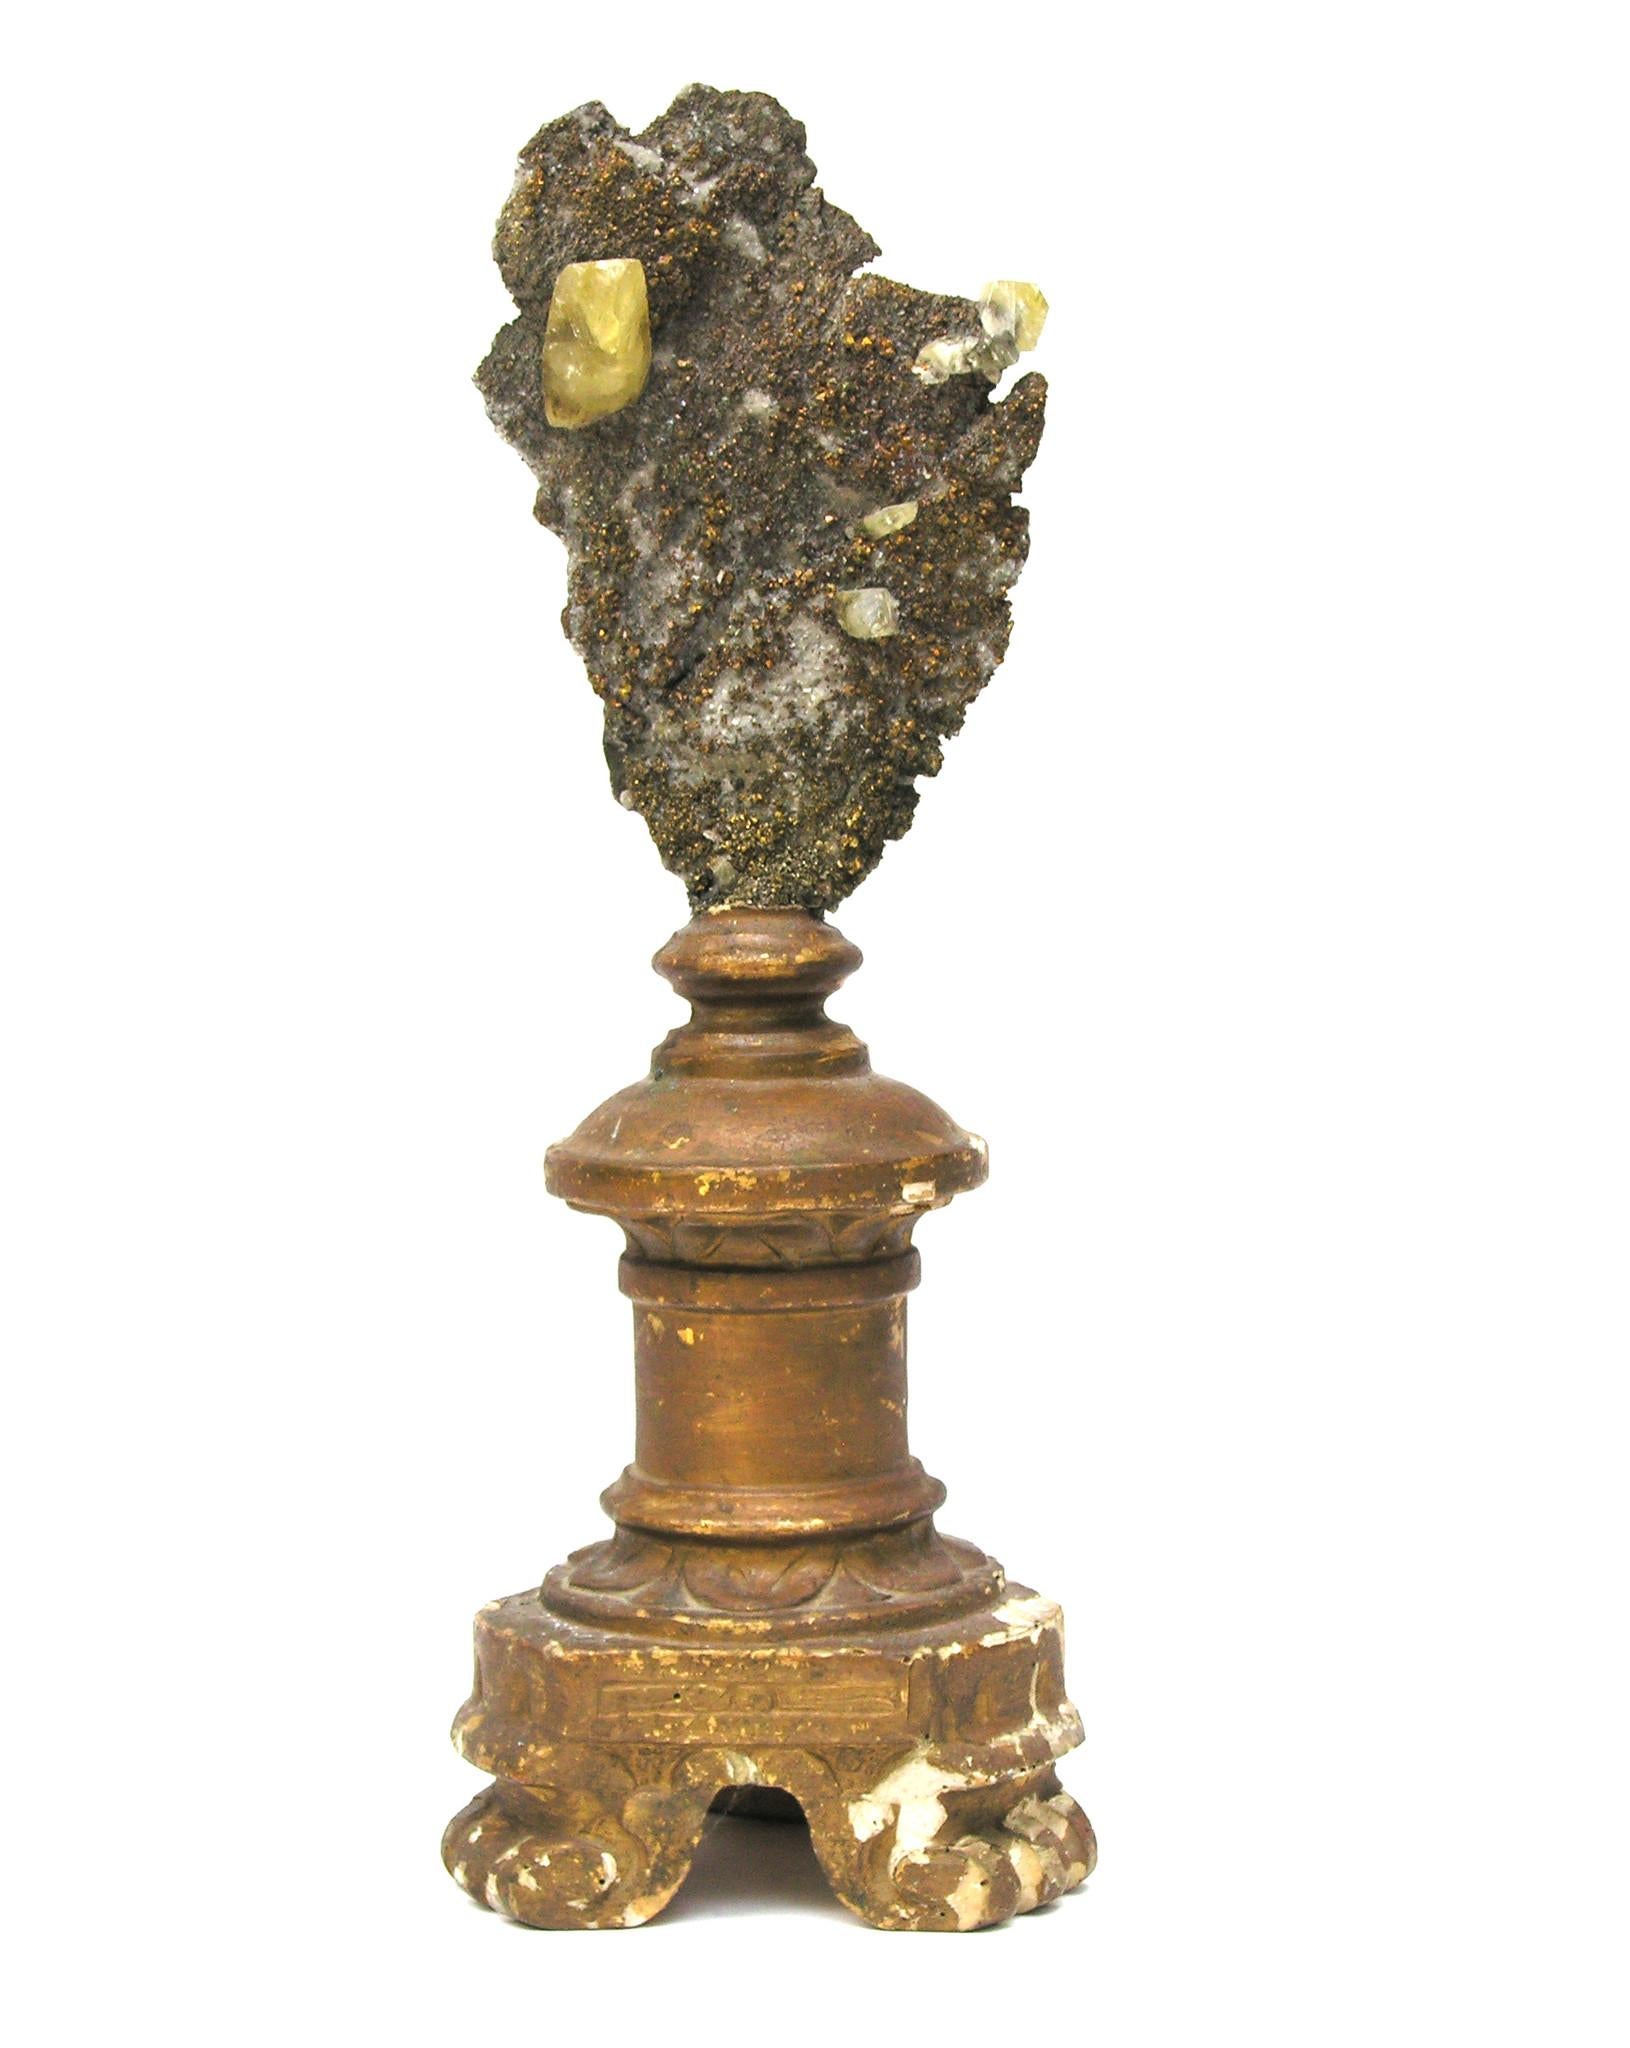 Bougeoir italien sculptural du 18e siècle monté avec des cristaux de chalcopyrite et de calcite dans la matrice.

Le fragment doré faisait à l'origine partie d'un chandelier dans une église italienne historique en Italie. Elle est montée avec les